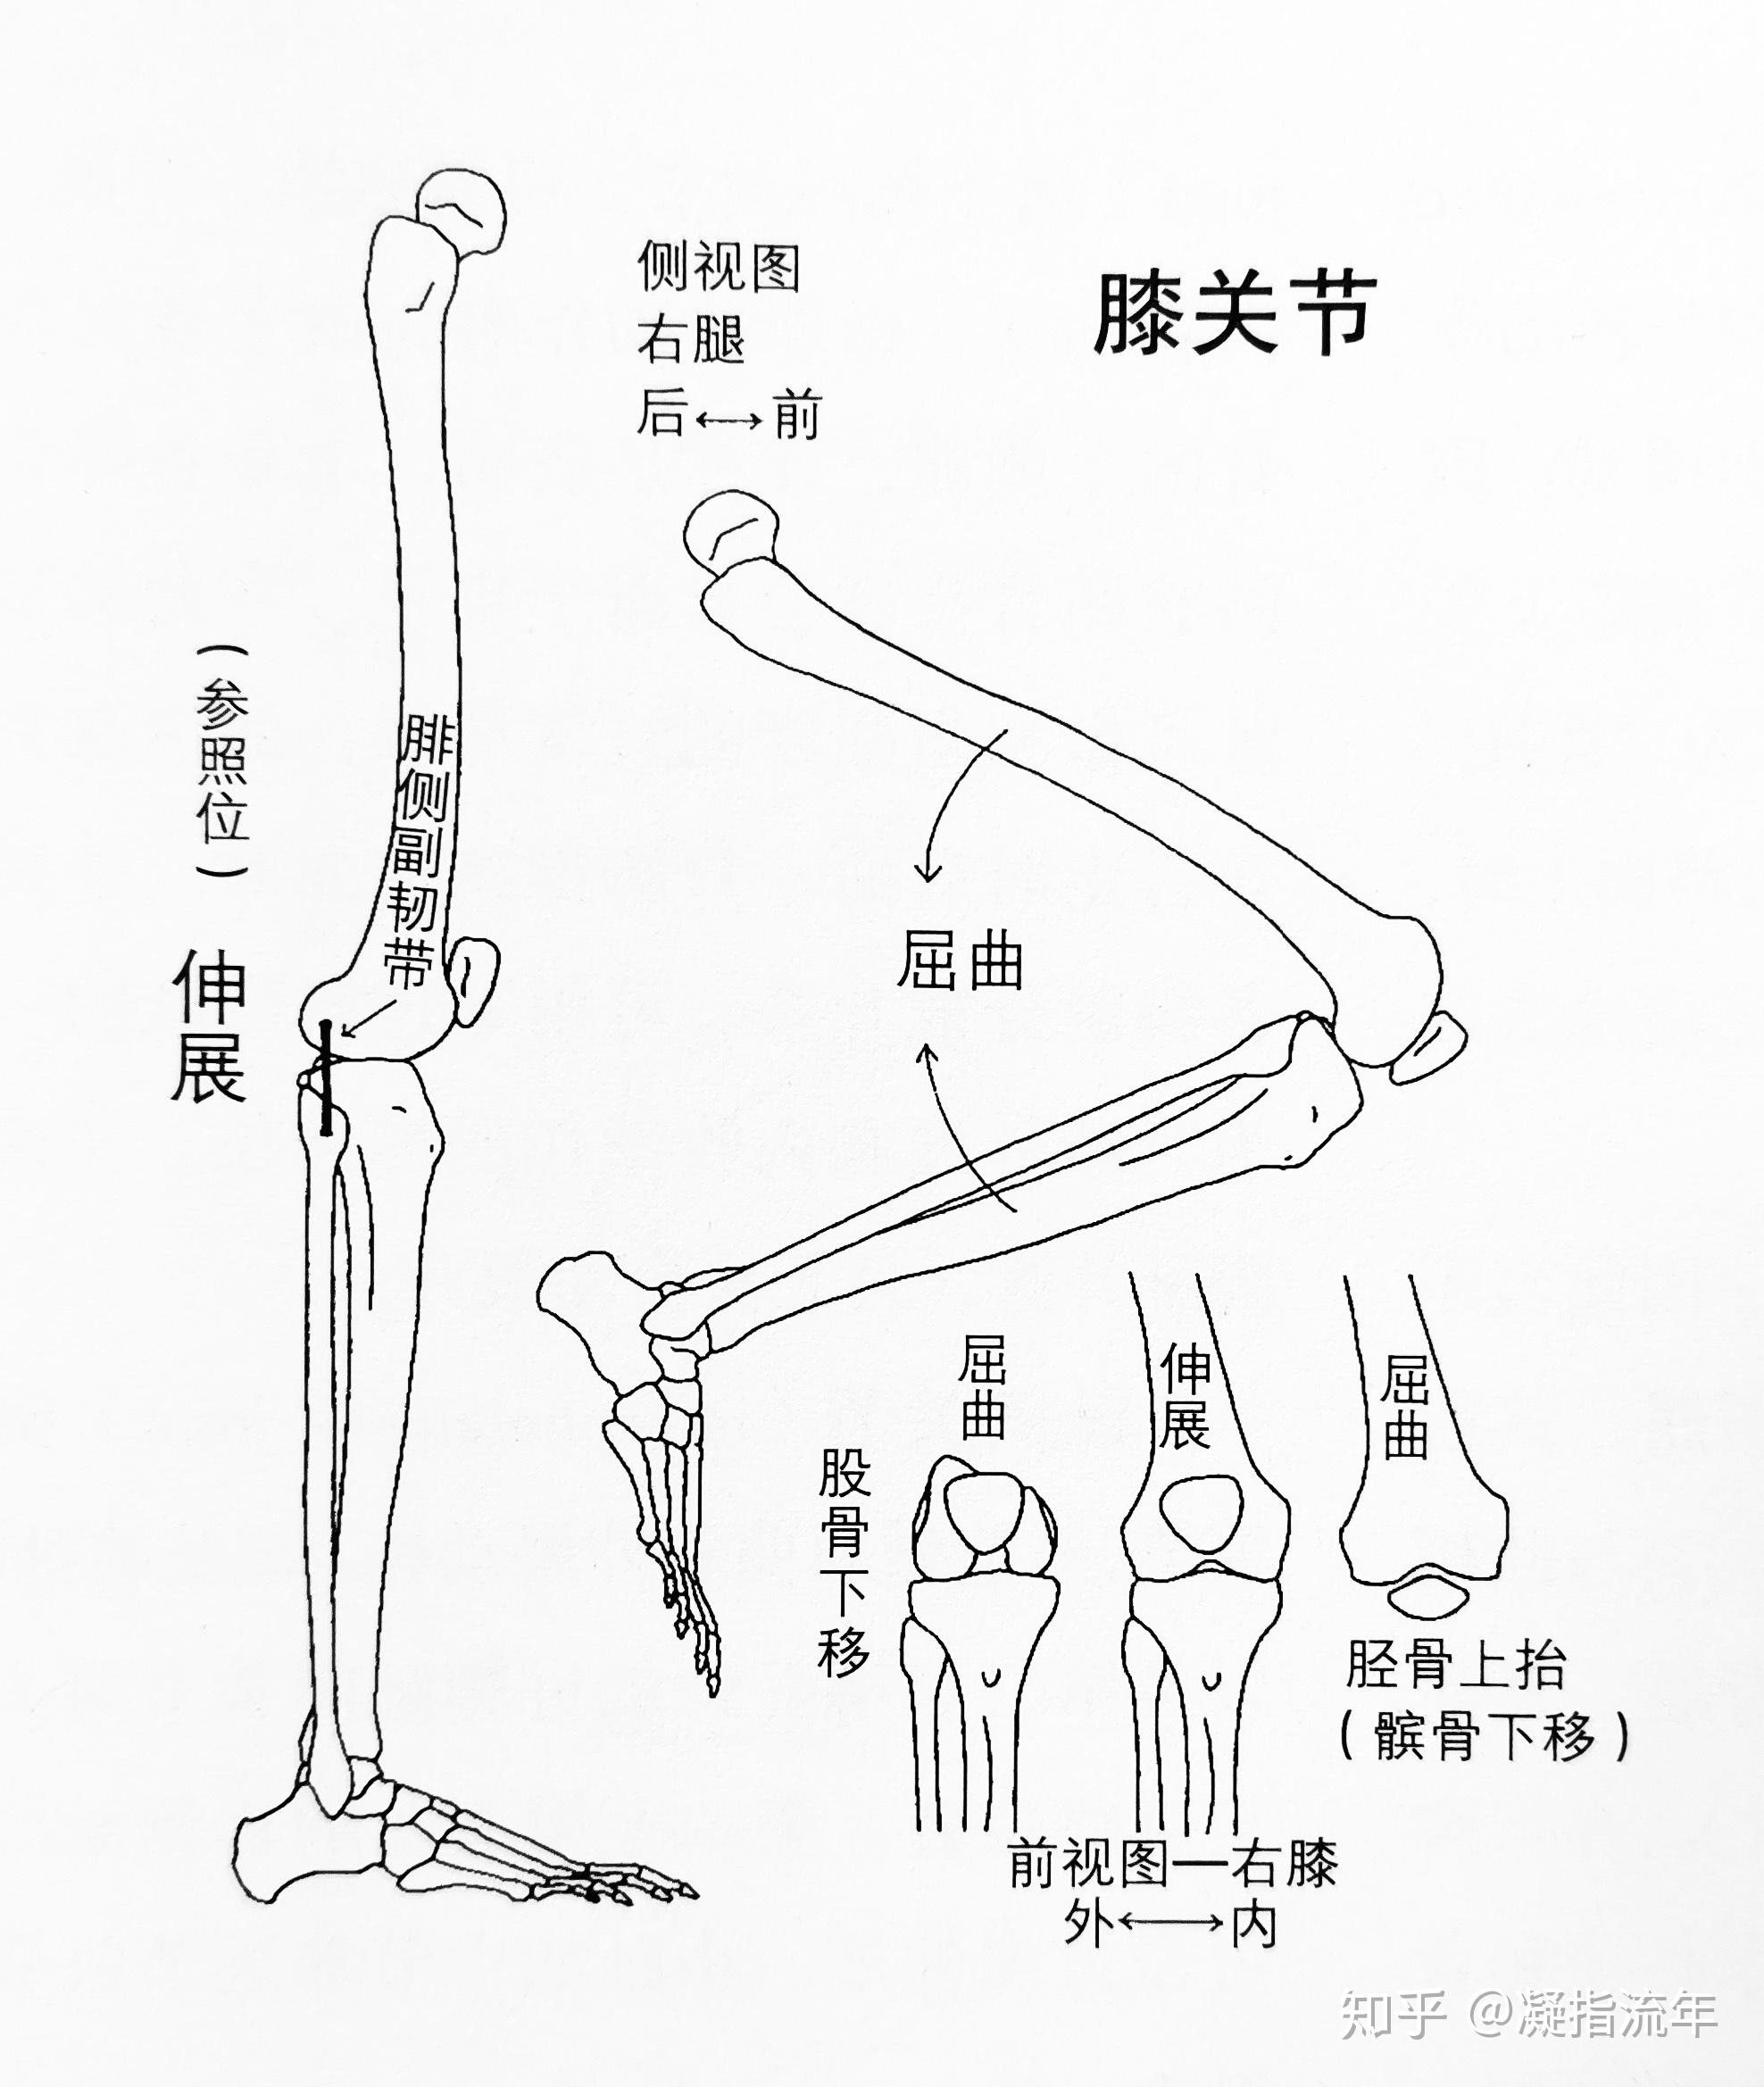 坚持学画:骨连接——附肢骨骼(下肢骨部分)